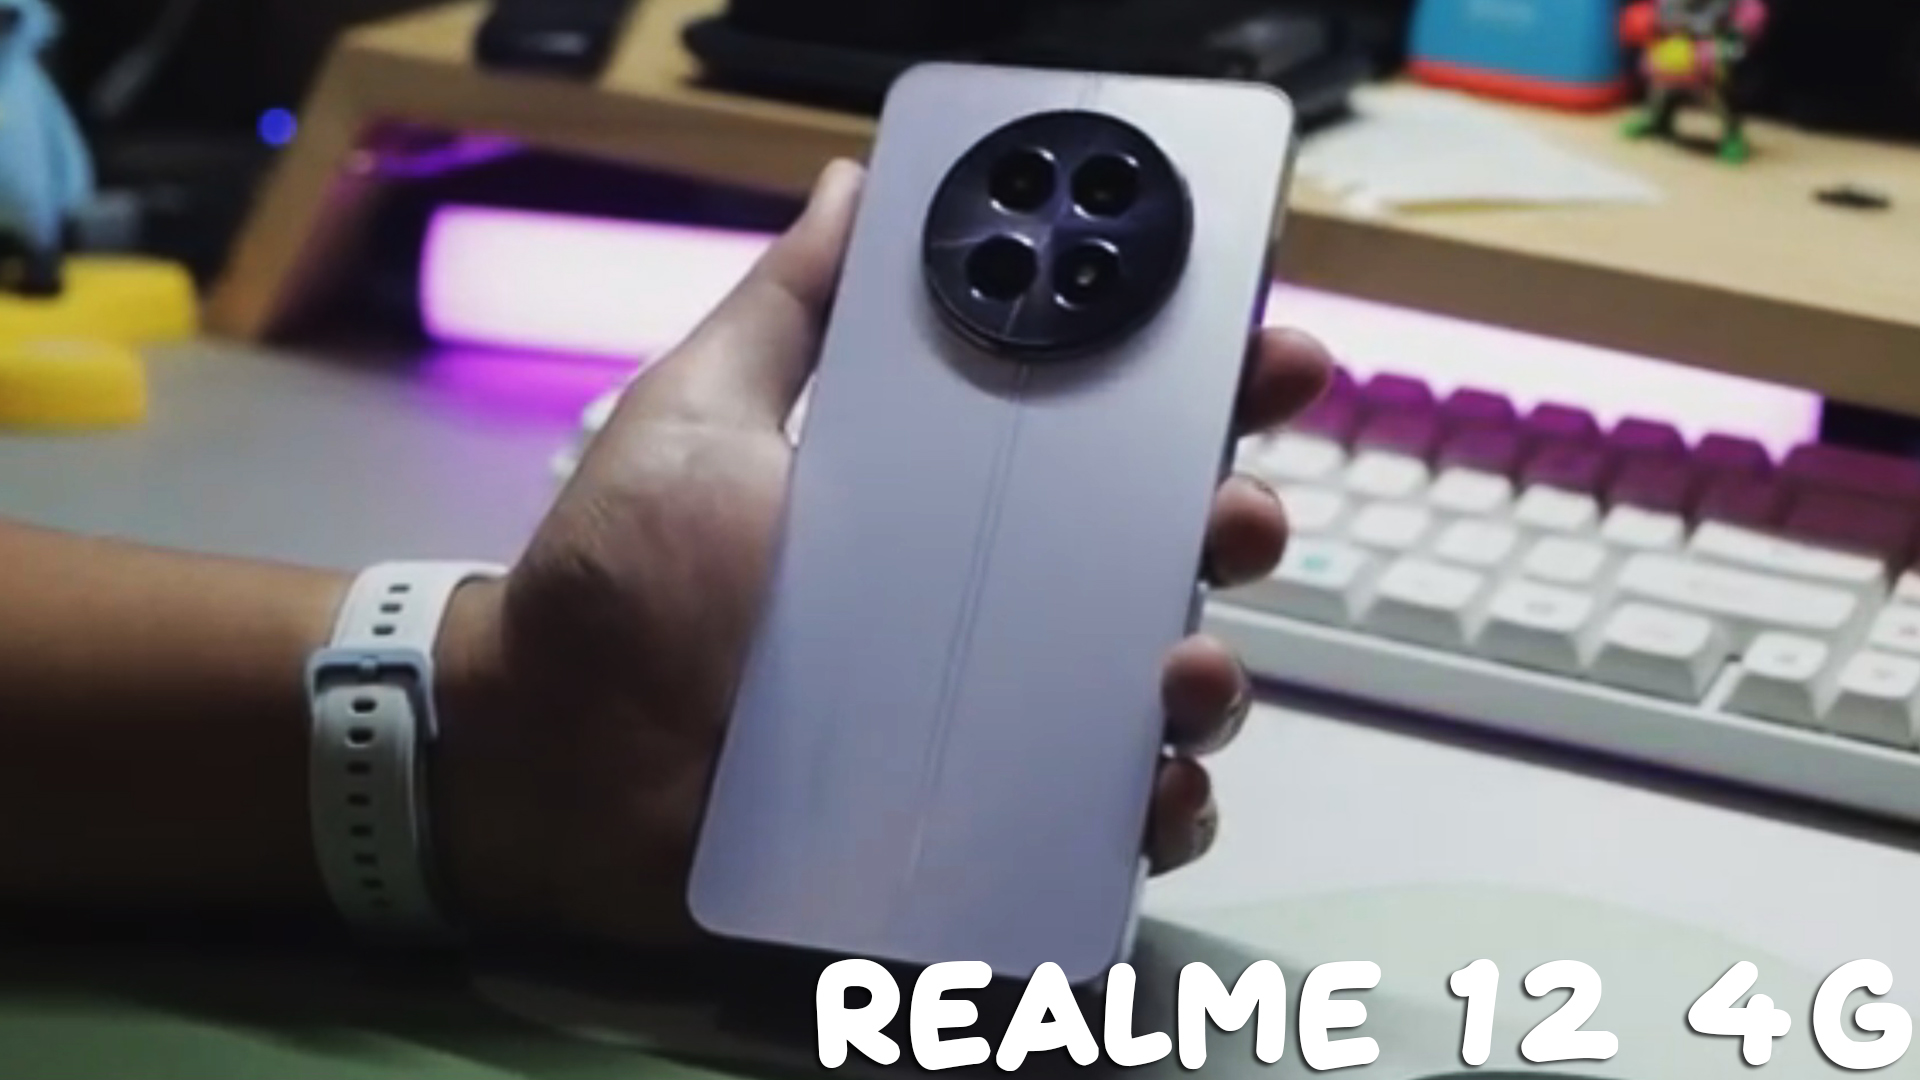 Realme 12 4G первый обзор на русском